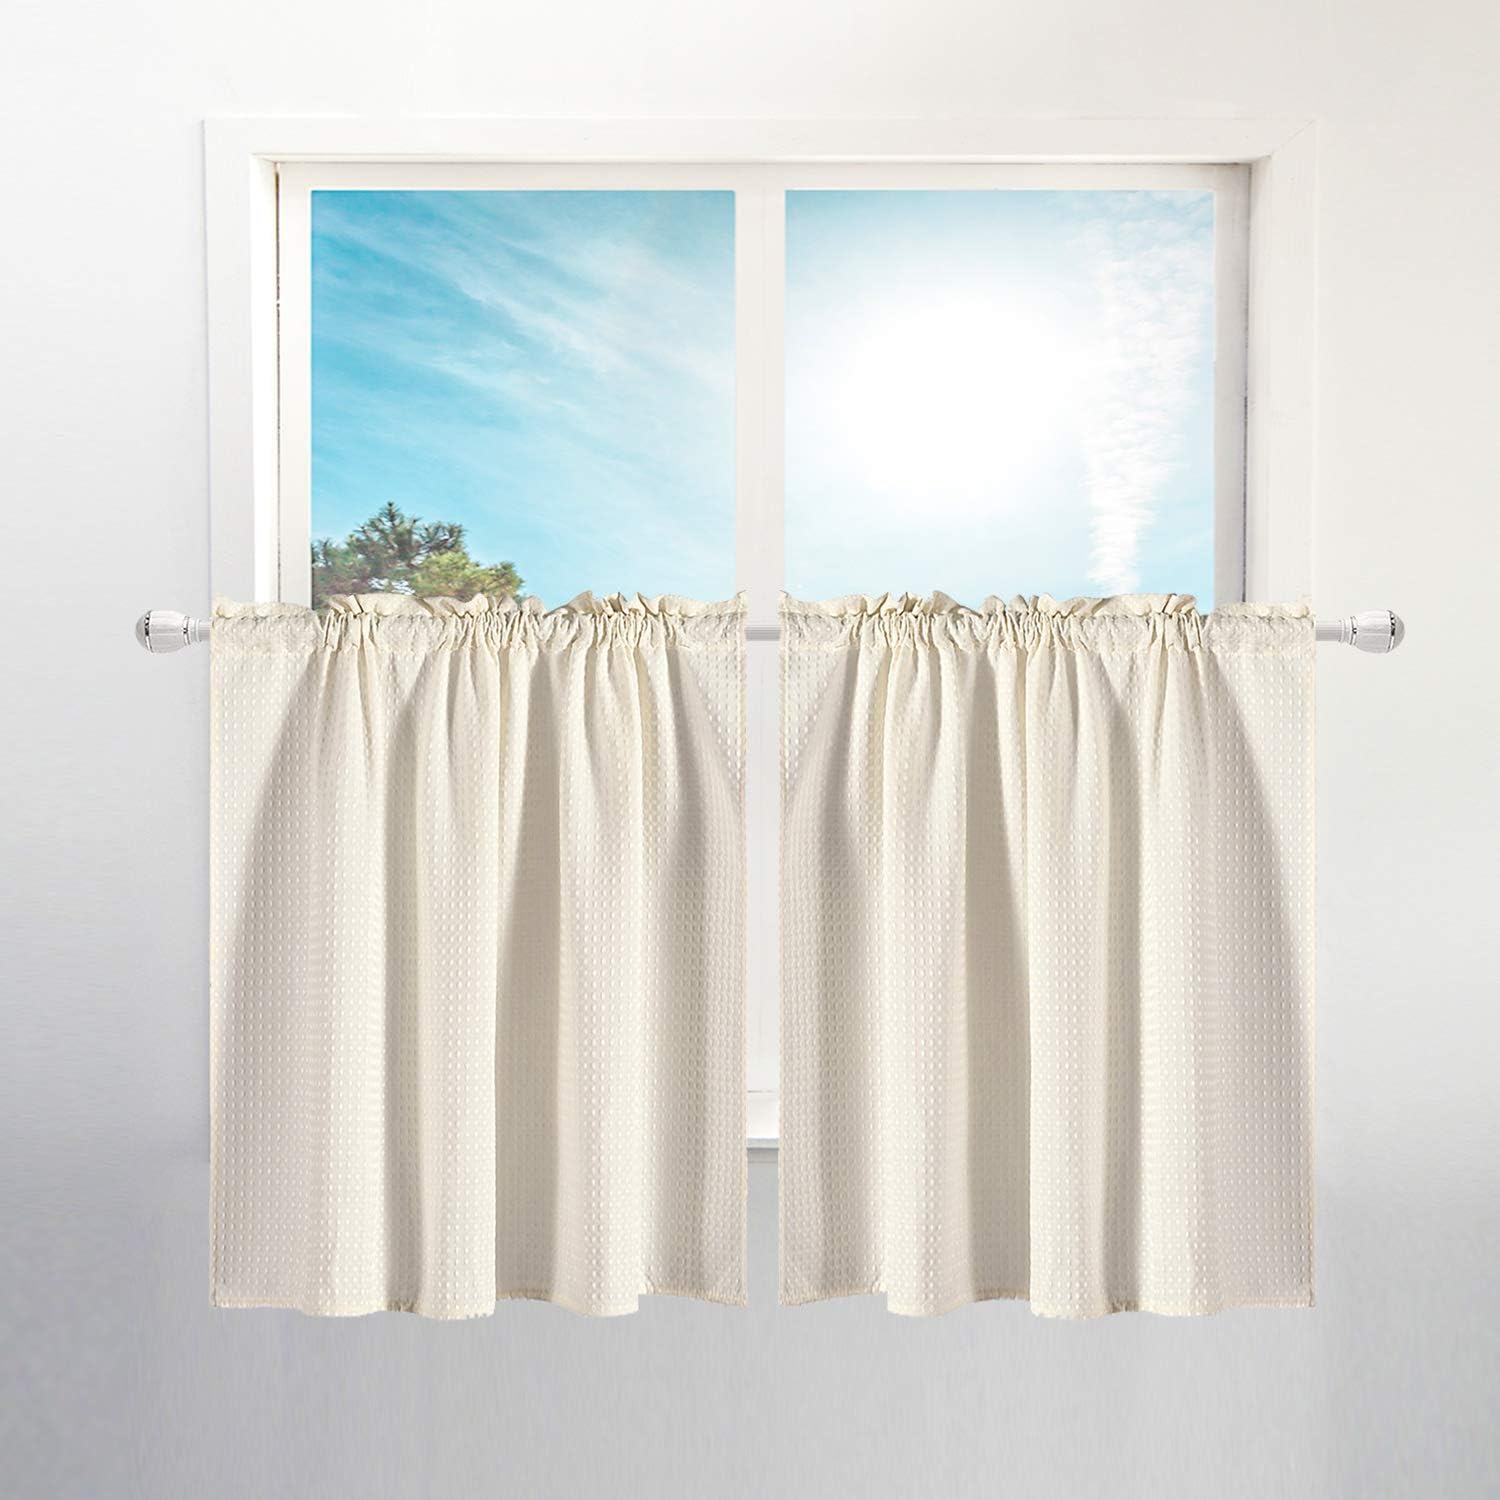 waterproof bathroom curtains